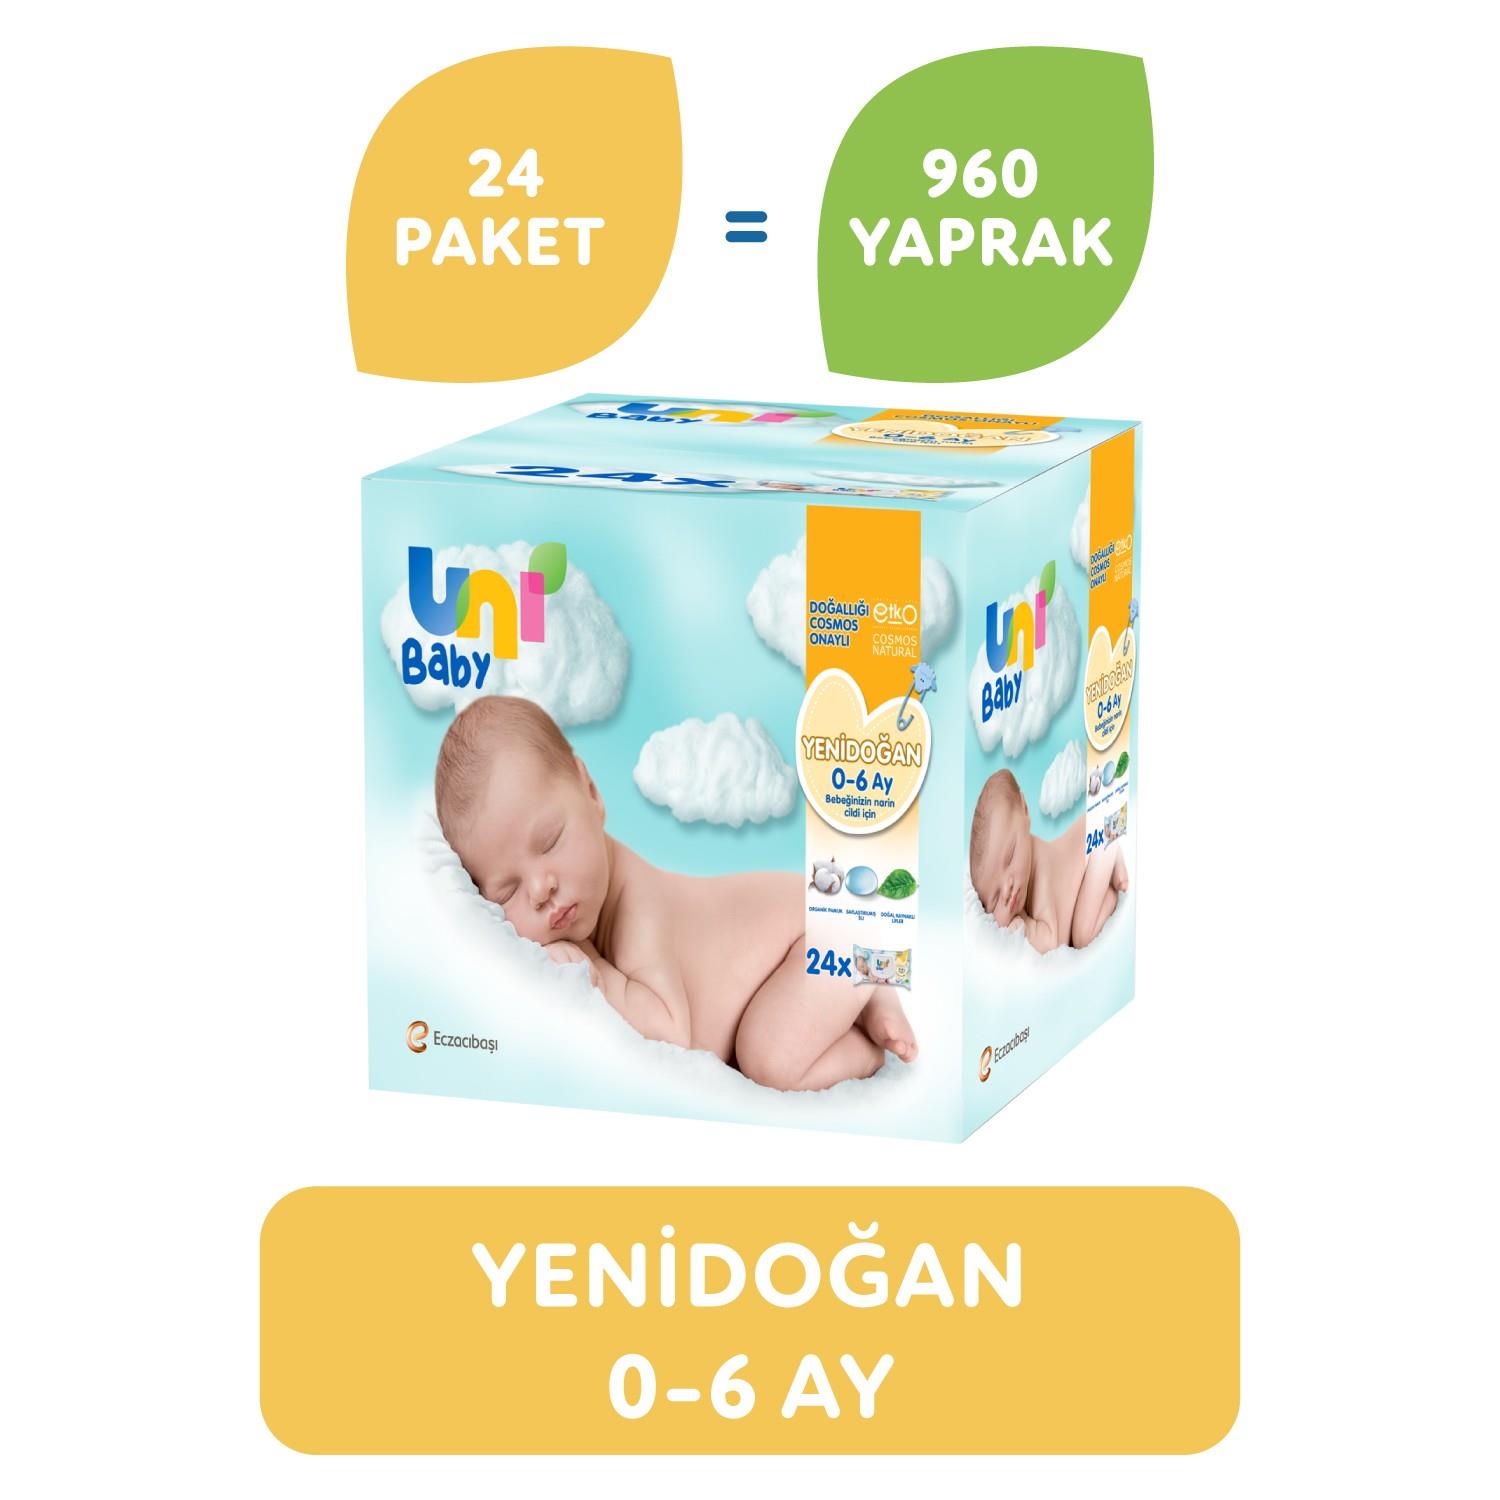 Uni Baby Yenidoğan Islak Mendil 24'lü 960 Yaprak